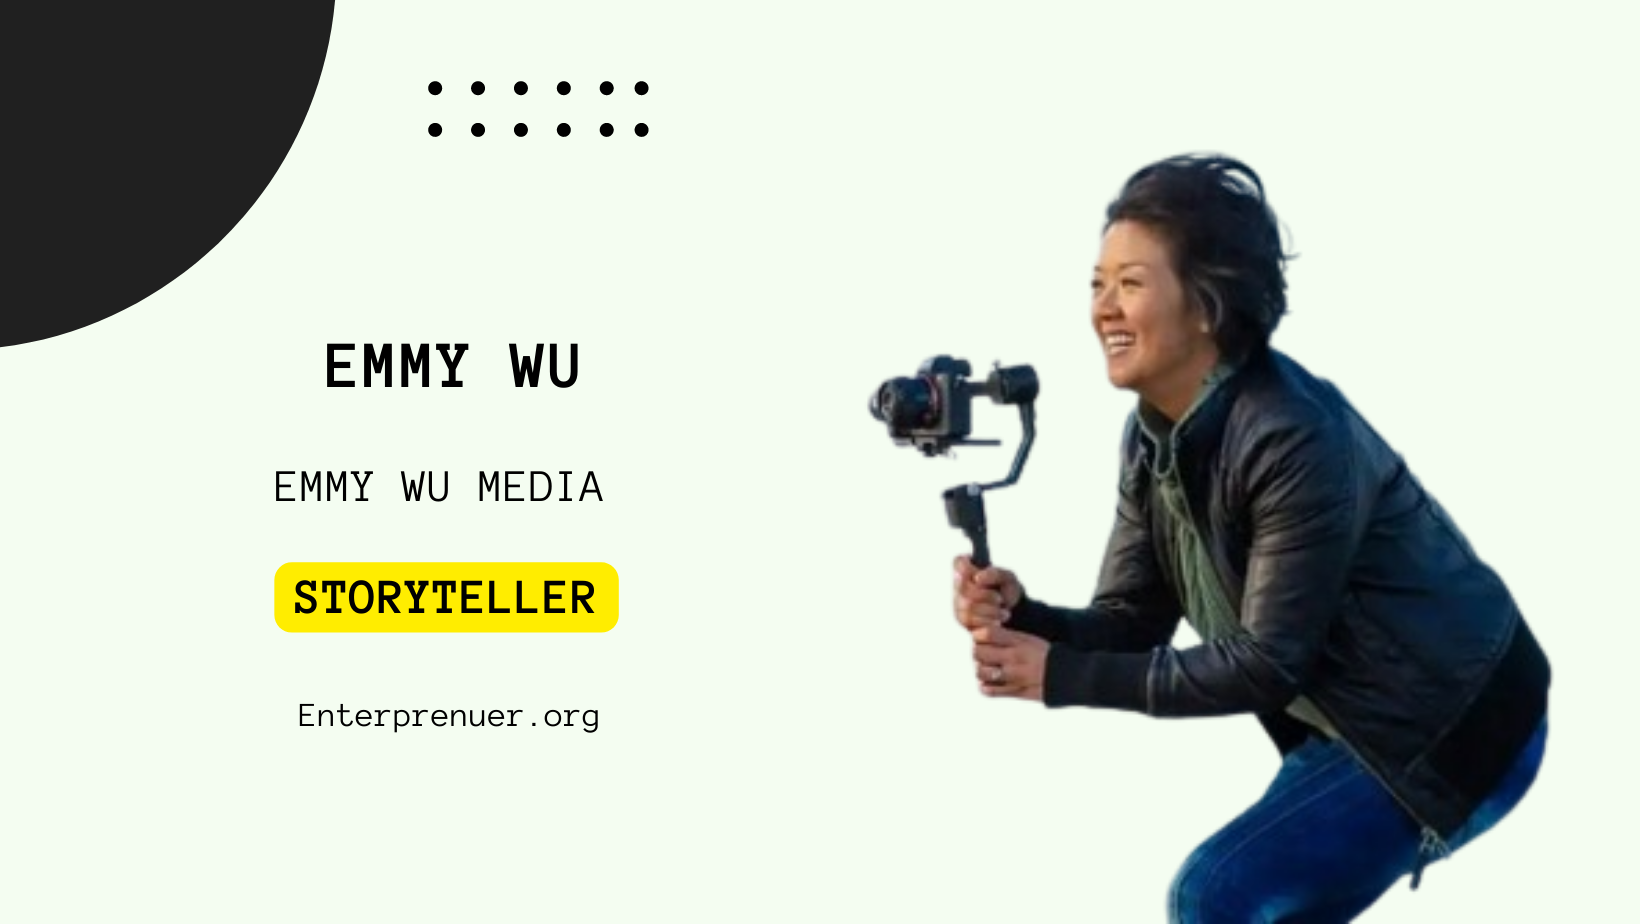 Emmy Wu Brand Storyteller at Emmy Wu Media